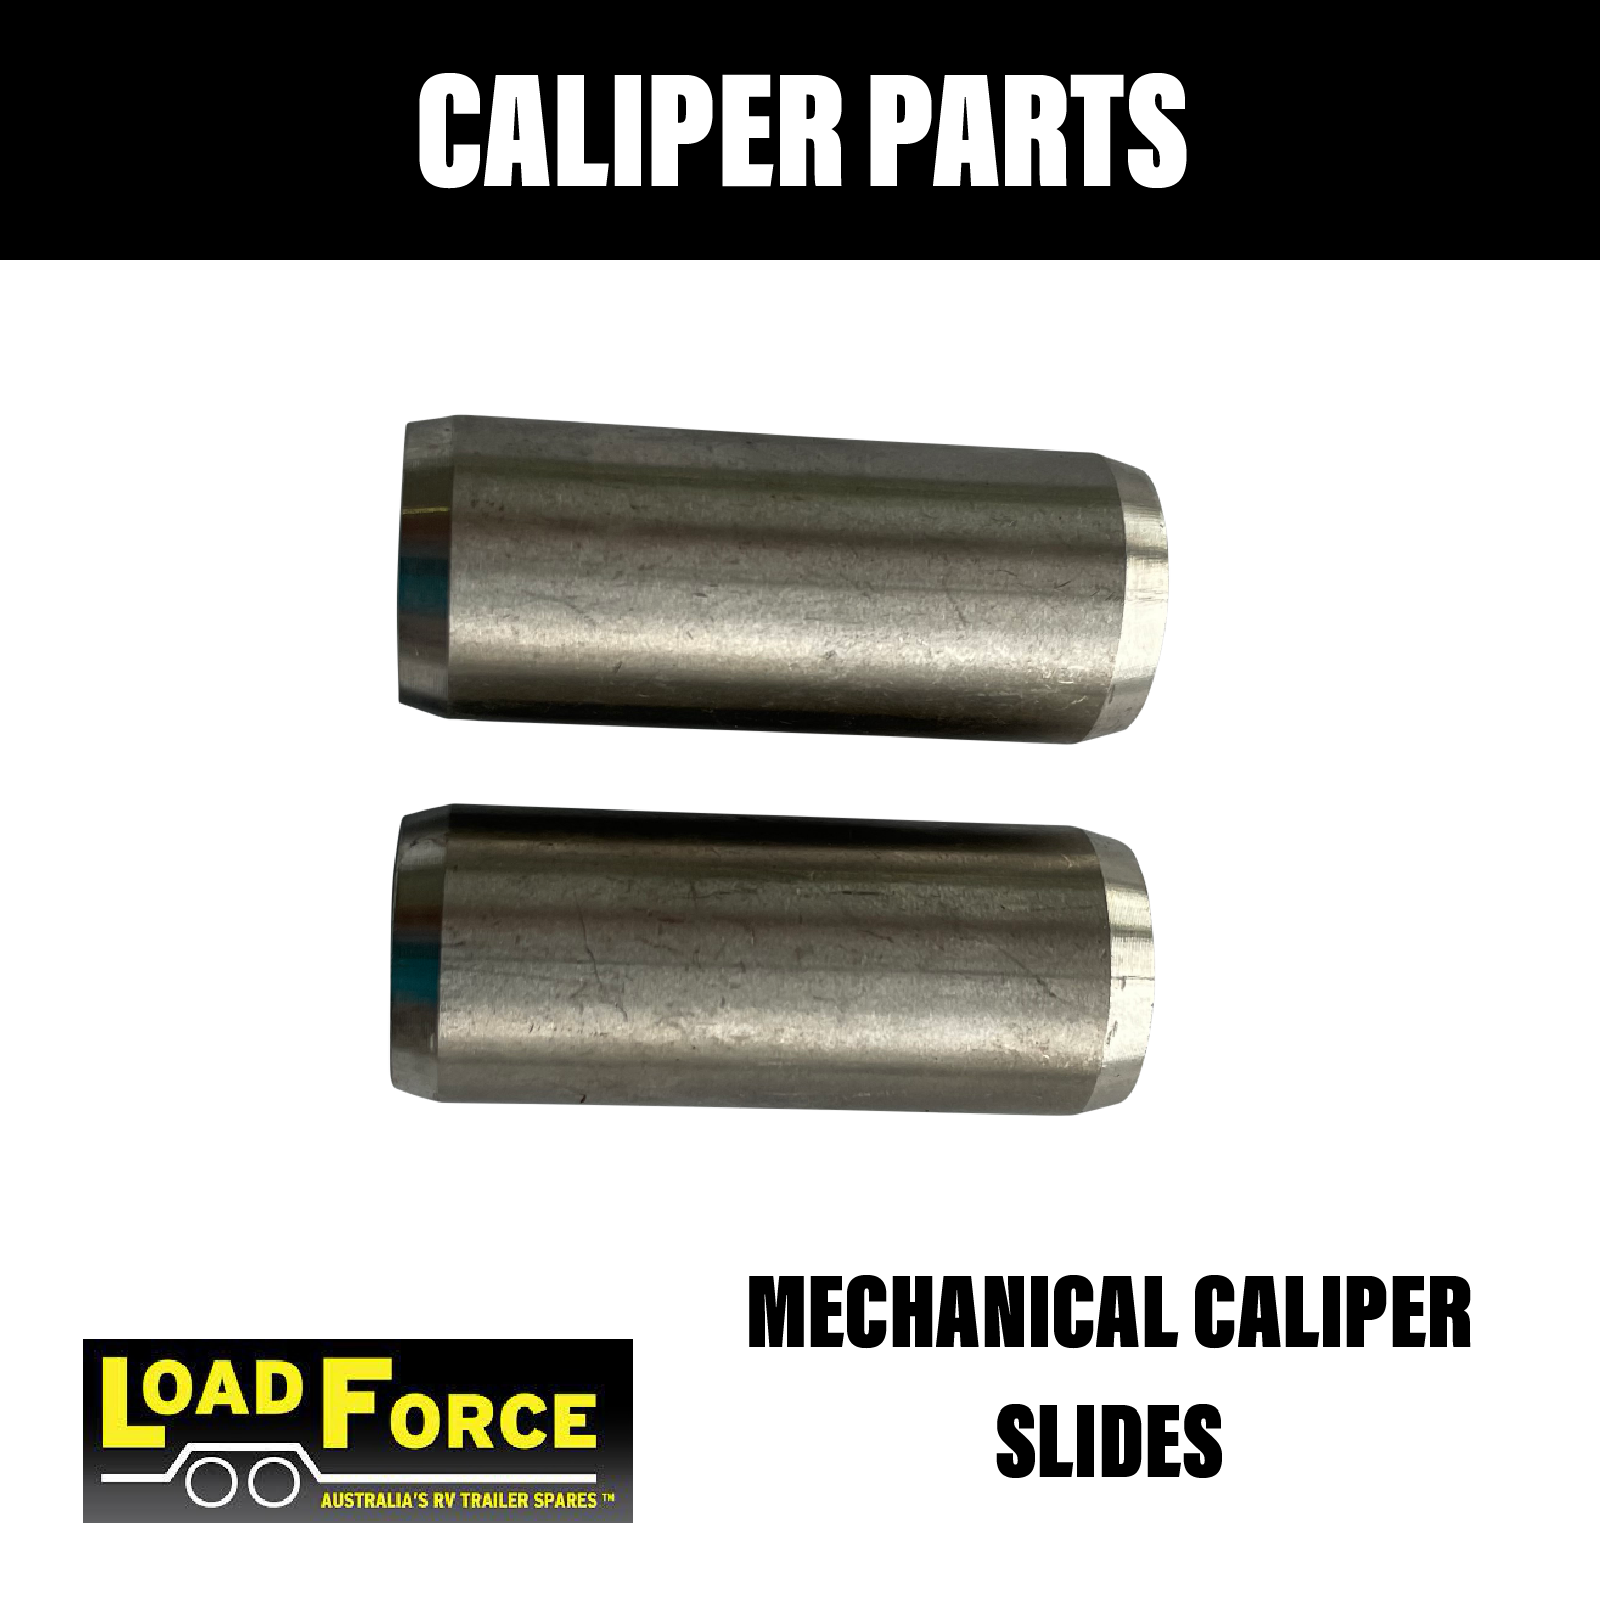 Loadforce S/S Mechanical Caliper Slides